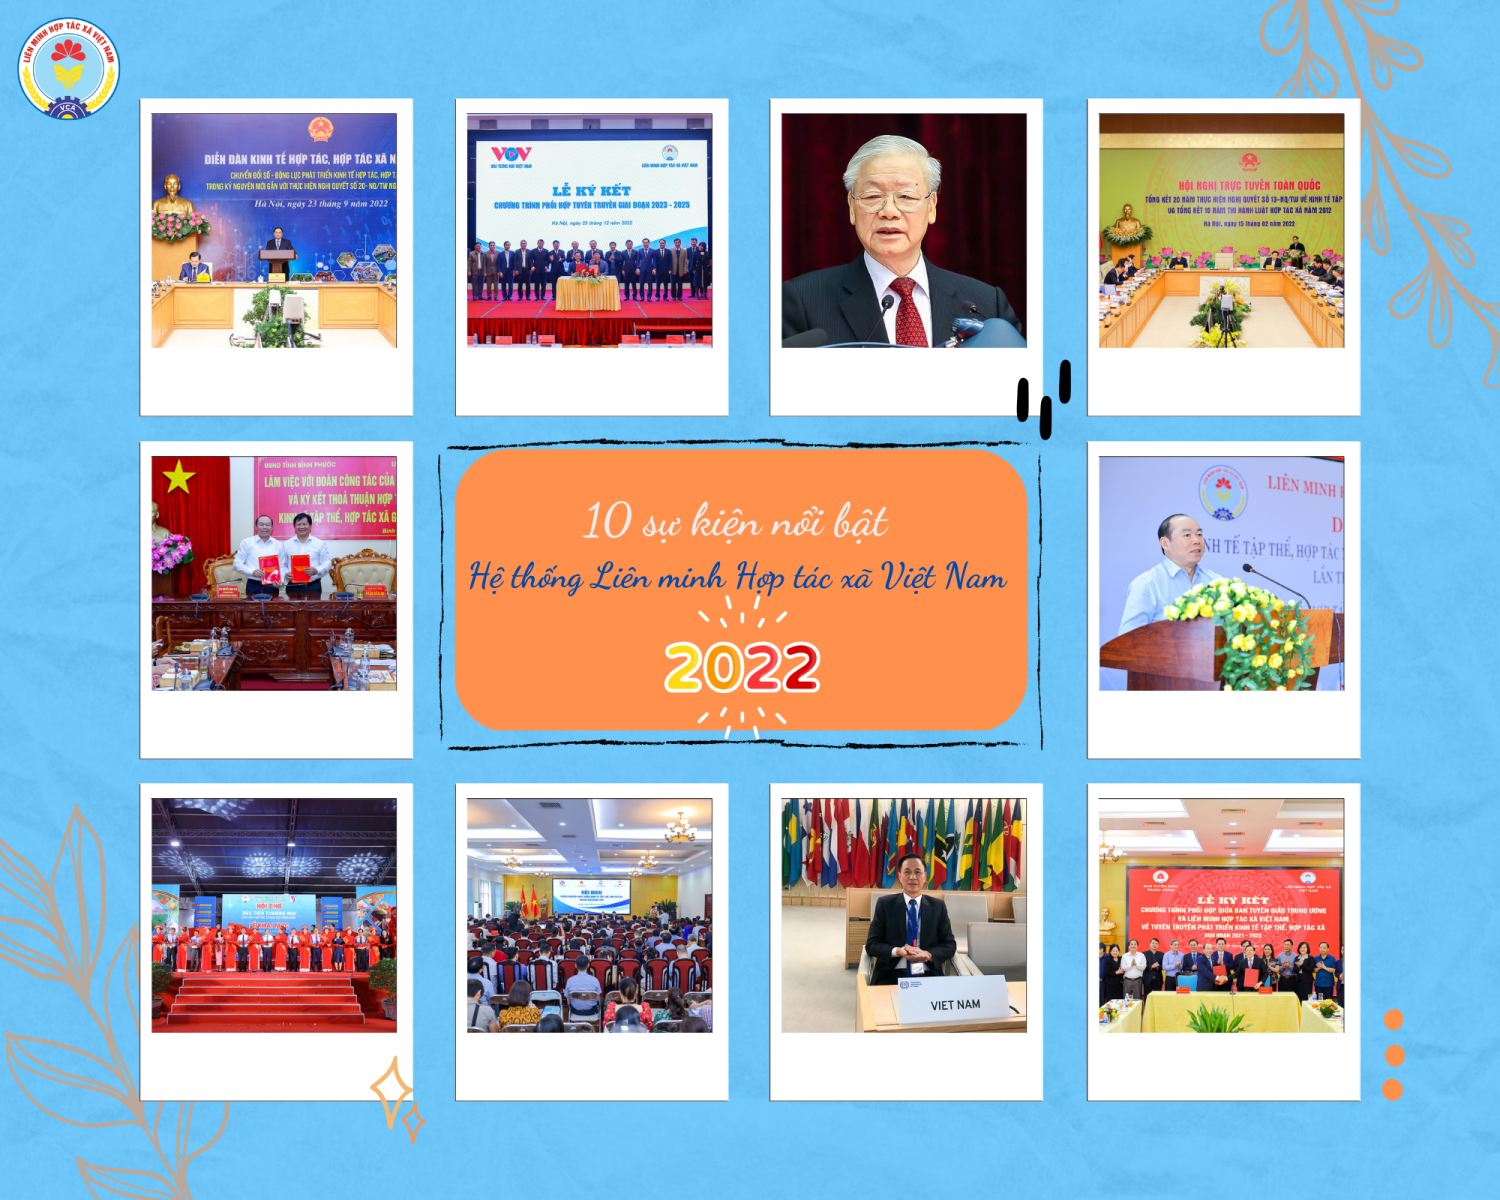 10 sự kiện nổi bật năm 2022 Hệ thống Liên minh Hợp tác xã Việt Nam